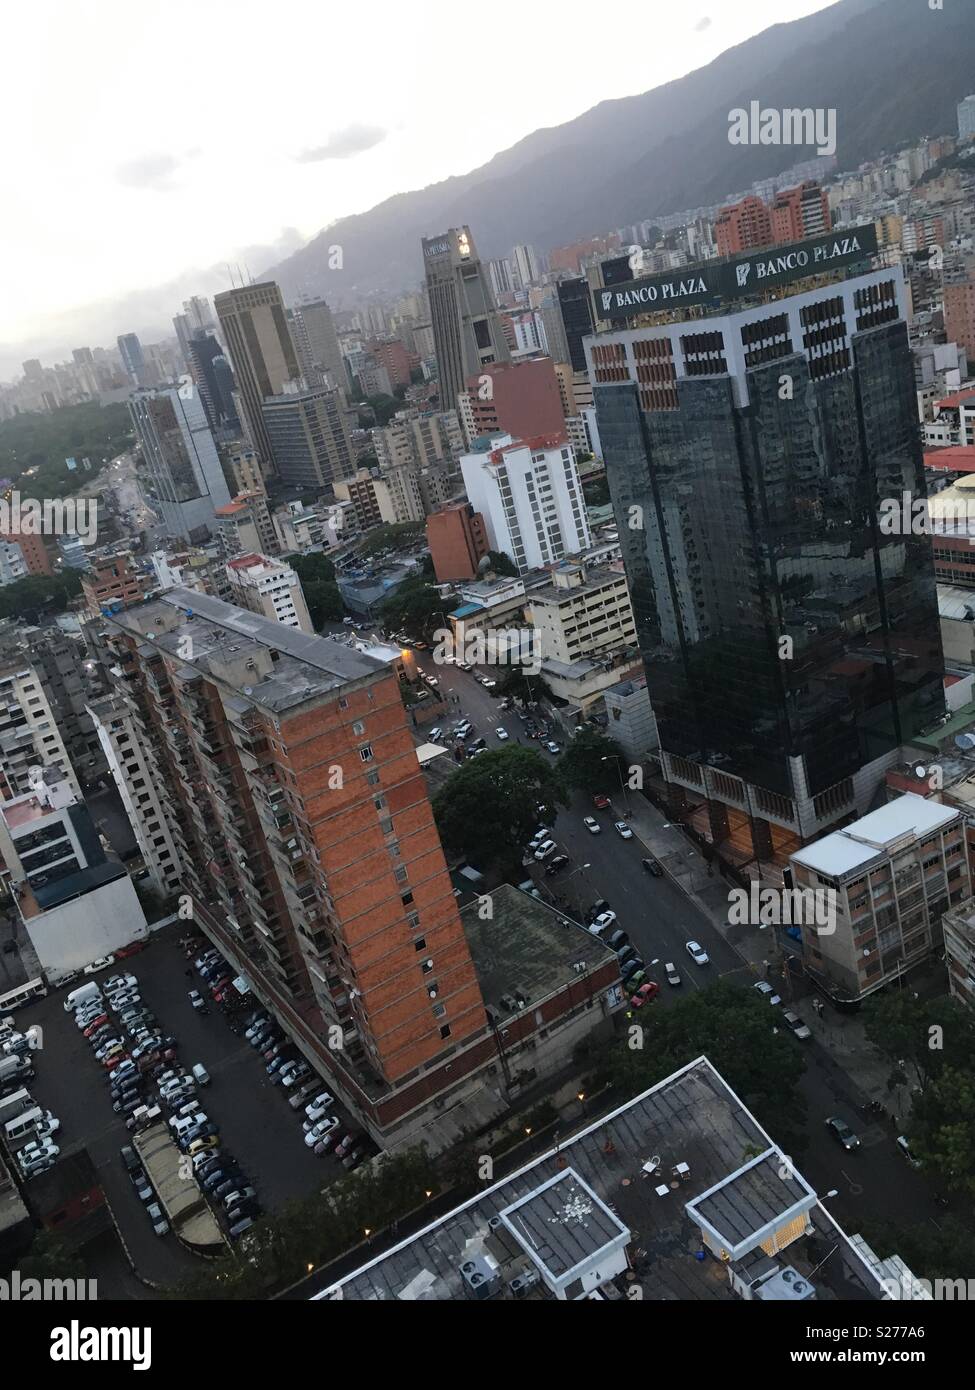 The Sabana Grande Area in Caracas. Banco Plaza Tower. Vicente Quintero Stock Photo